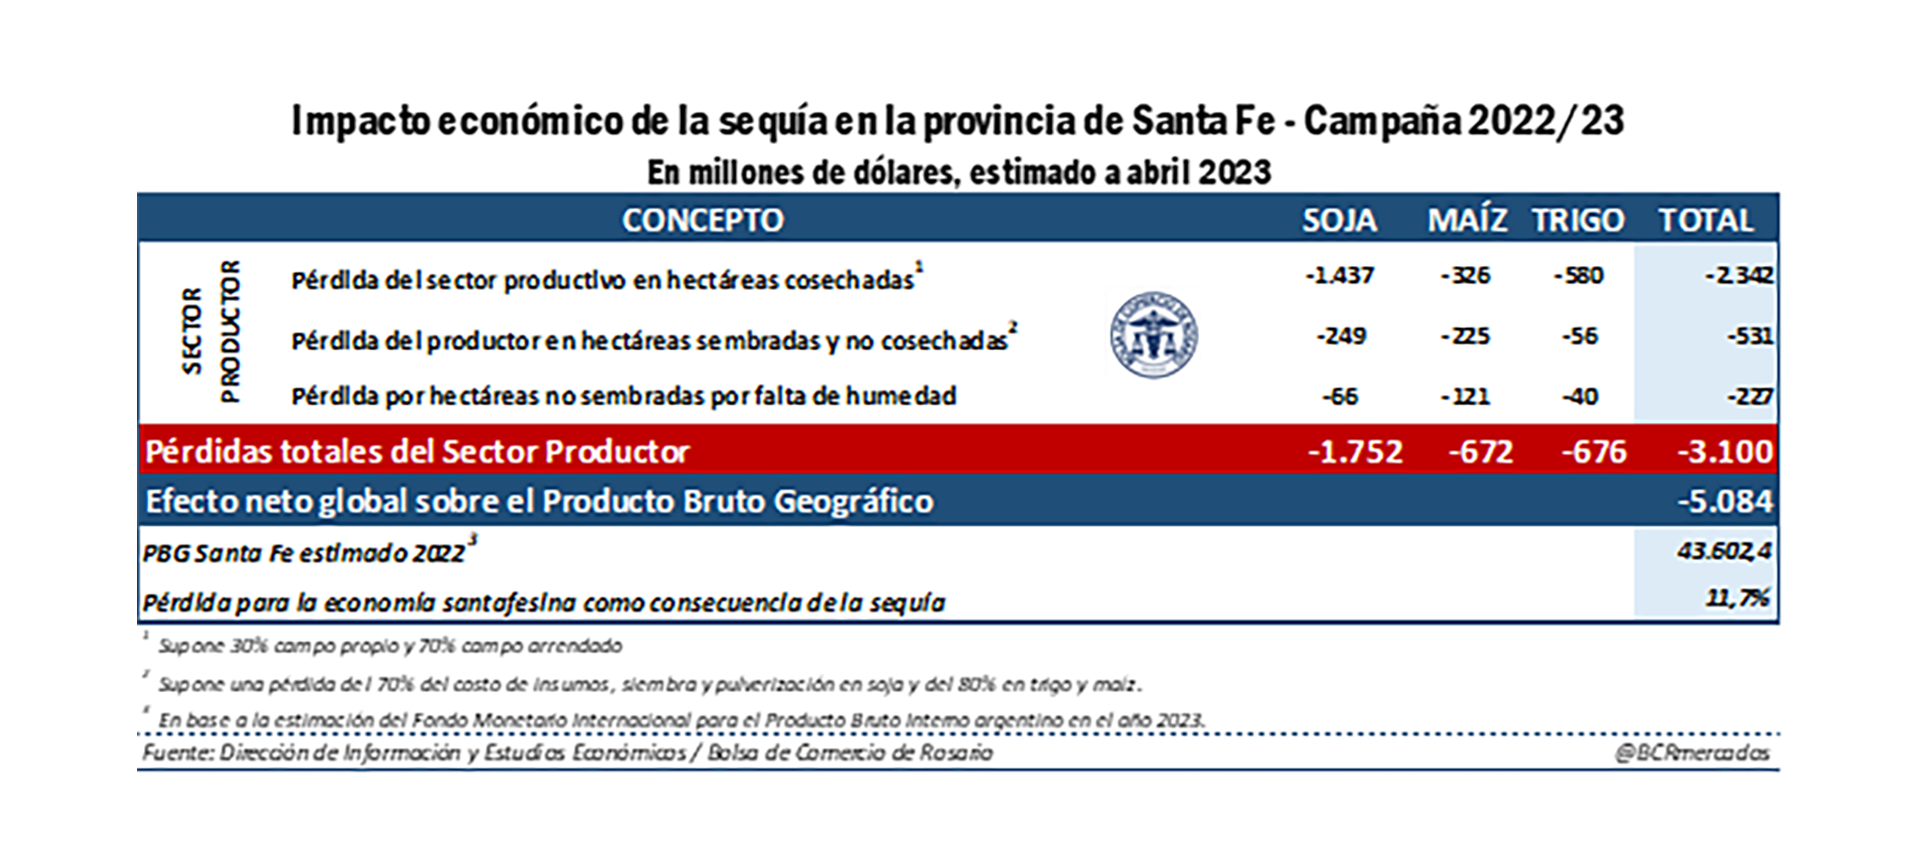 Impacto económico de la Sequía en la provincia de Santa Fe. (Bolsa de Comercio de Rosario) 